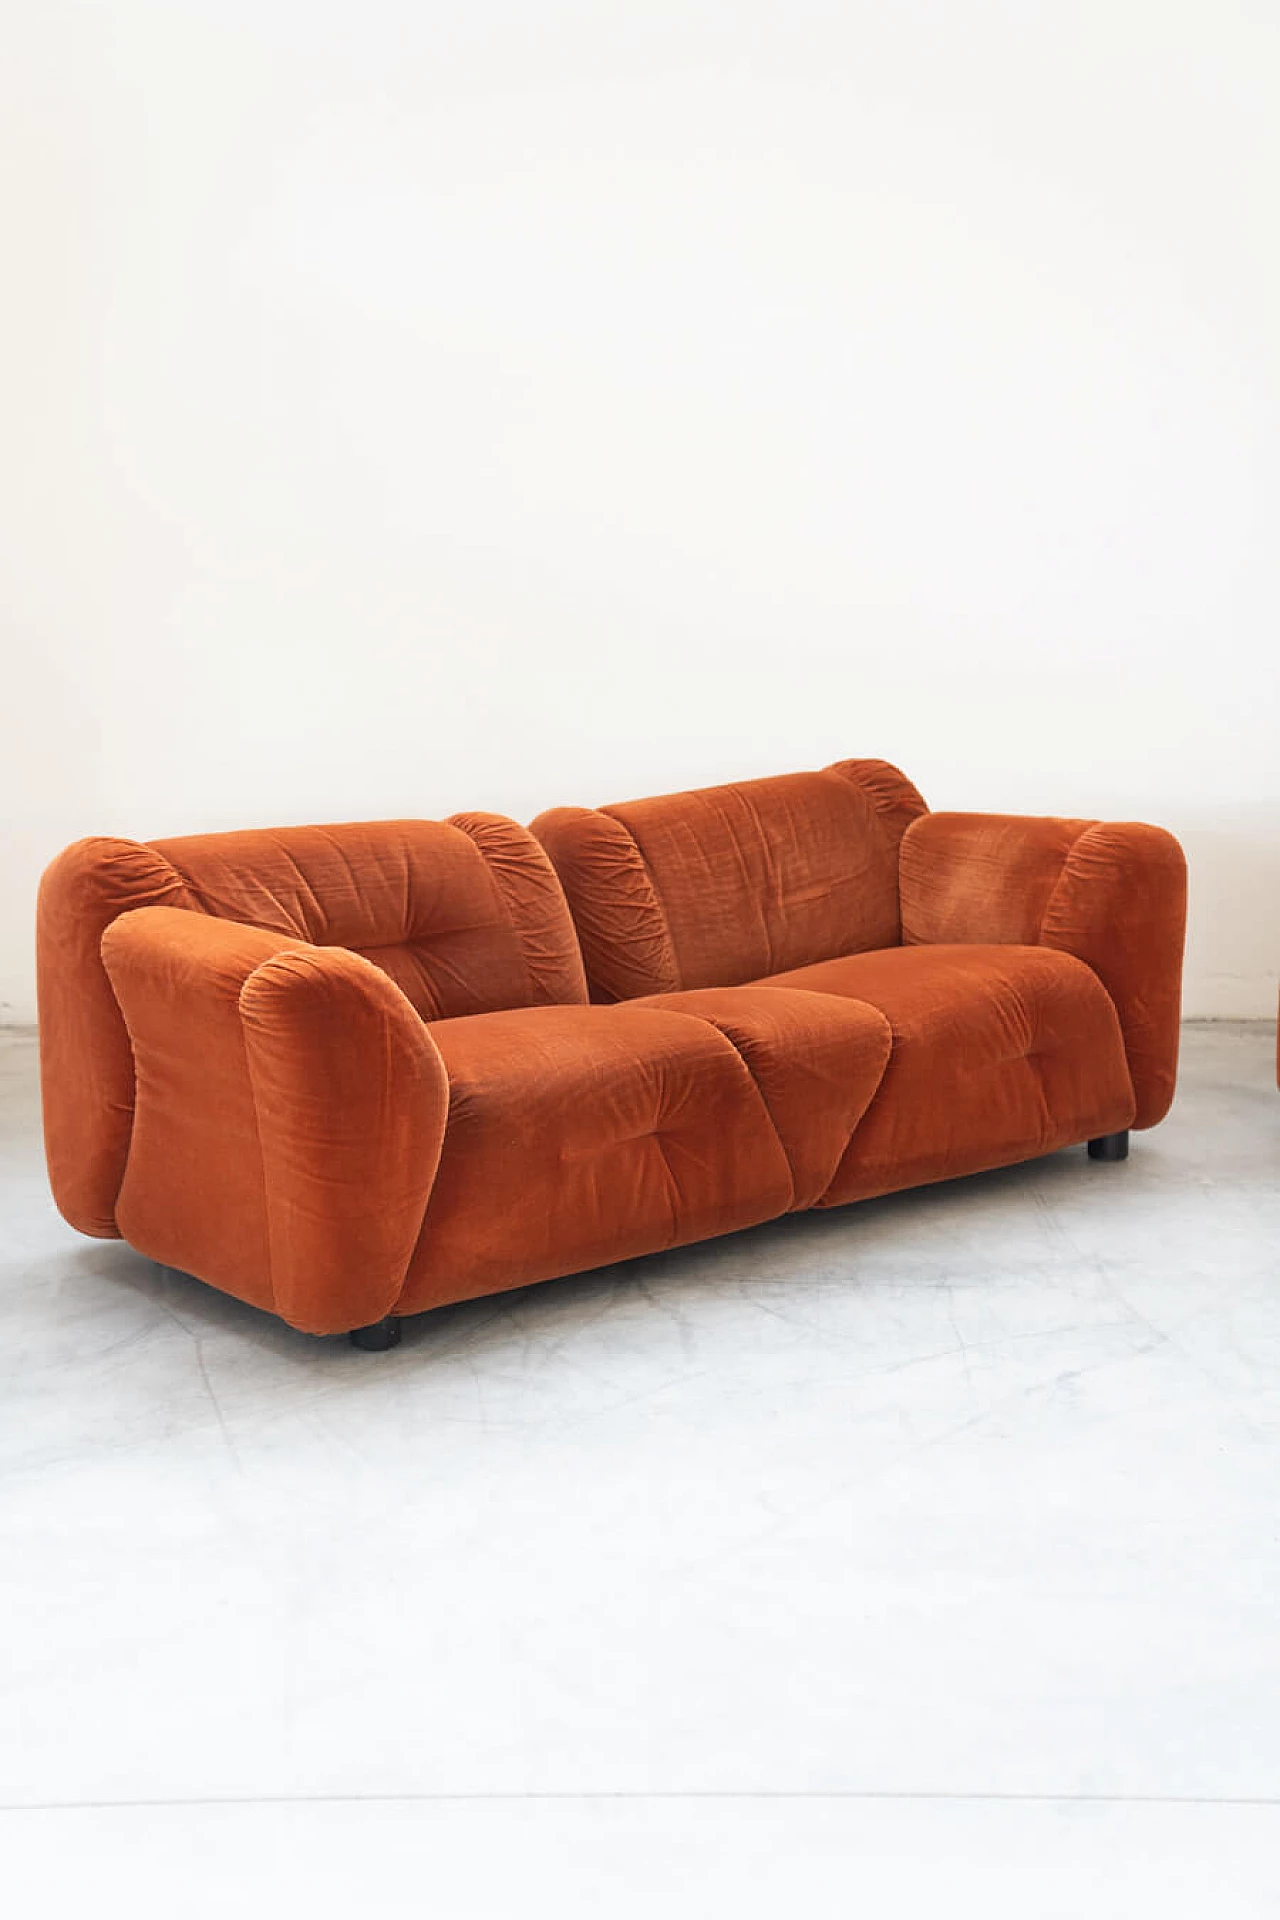 Coppia di divani in ciniglia arancione, anni '70 15